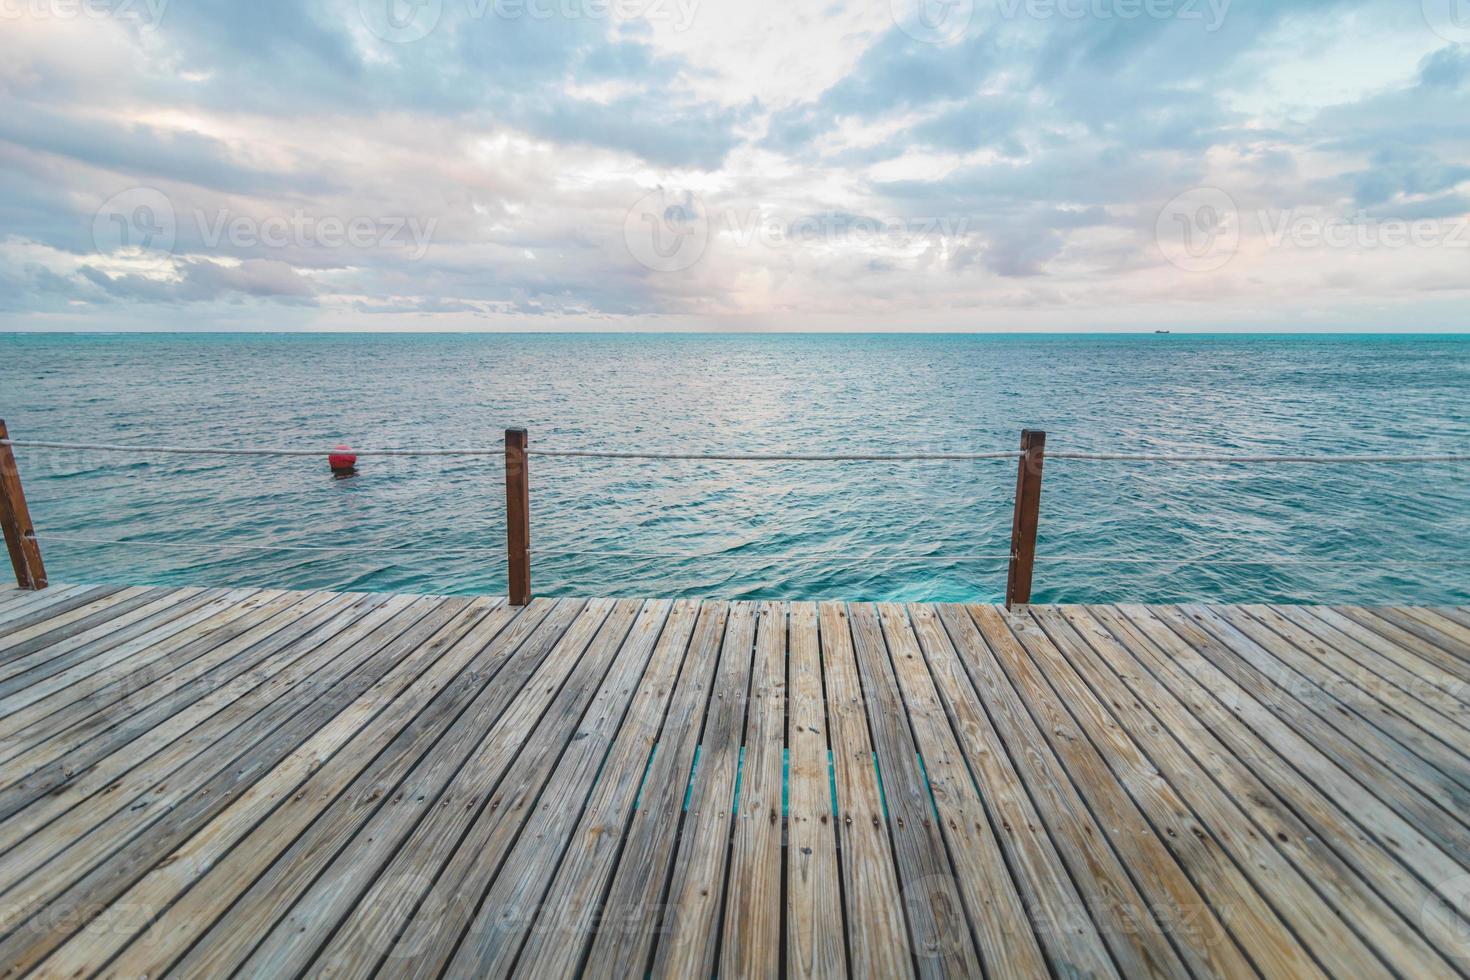 Muelle de madera y mar caribe turquesa foto